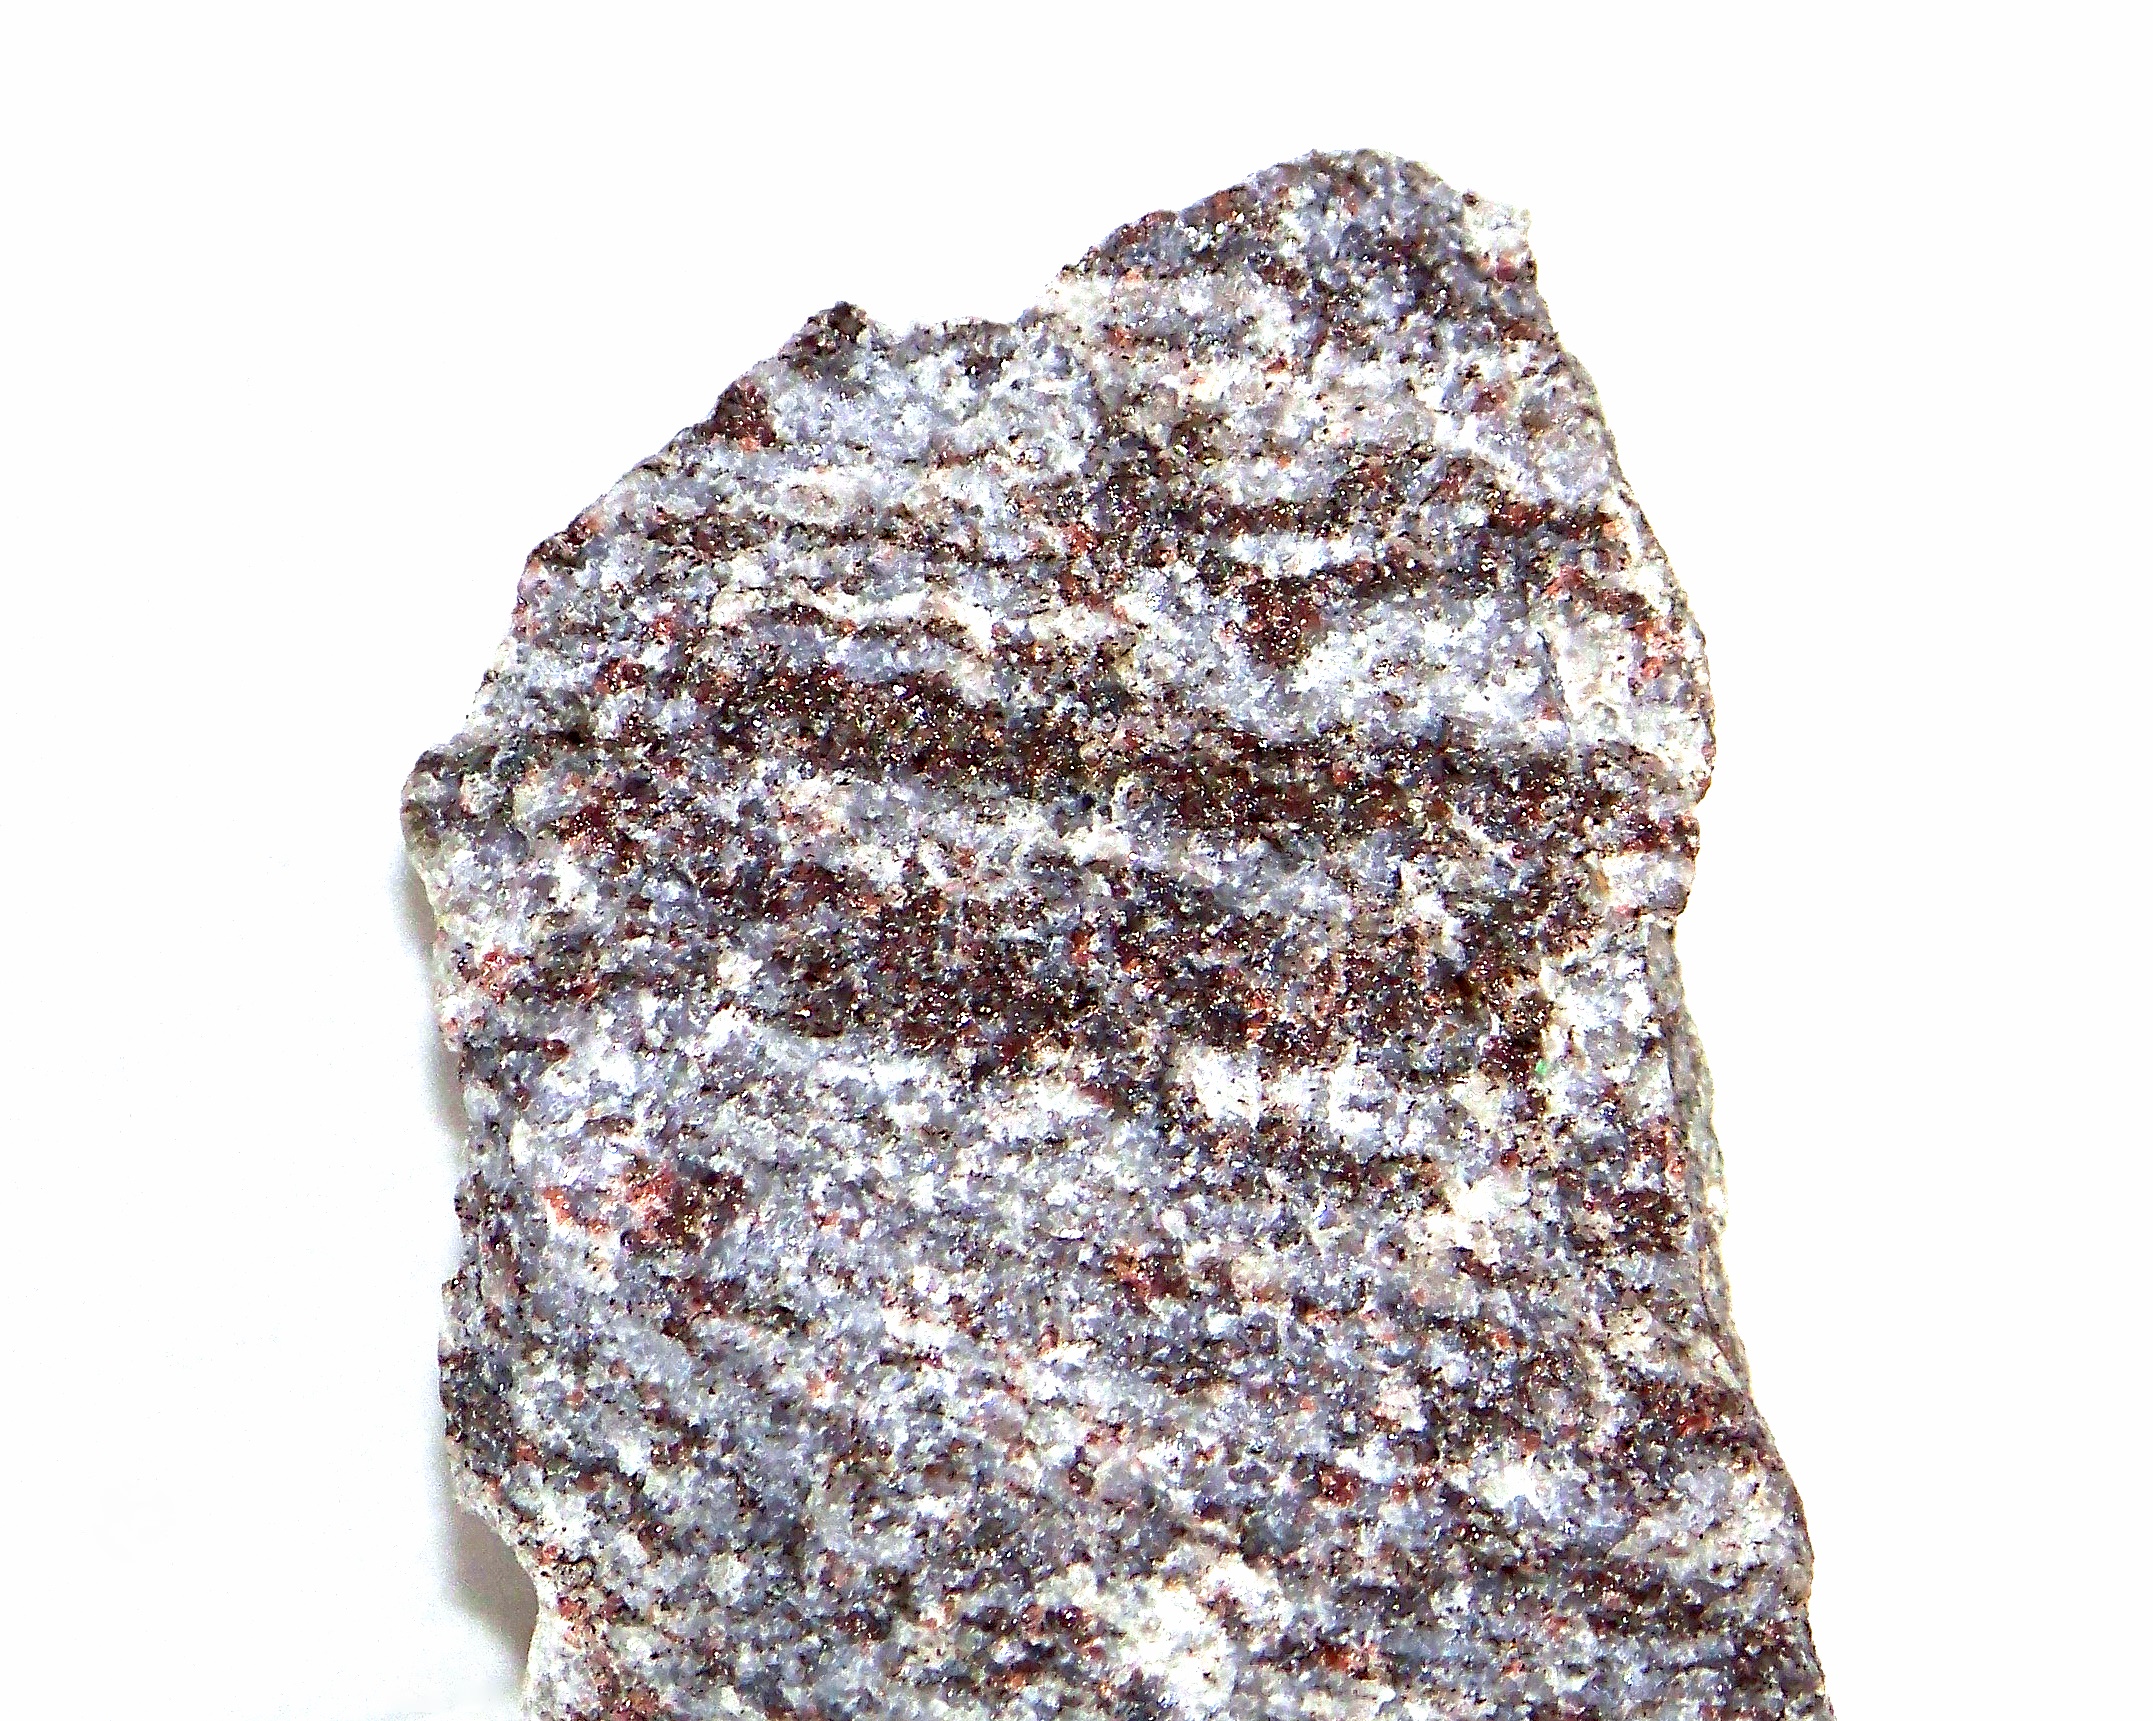 Granulite. © Piotr Sosnowski, Wikimedia Commons, CC by-sa 4.0